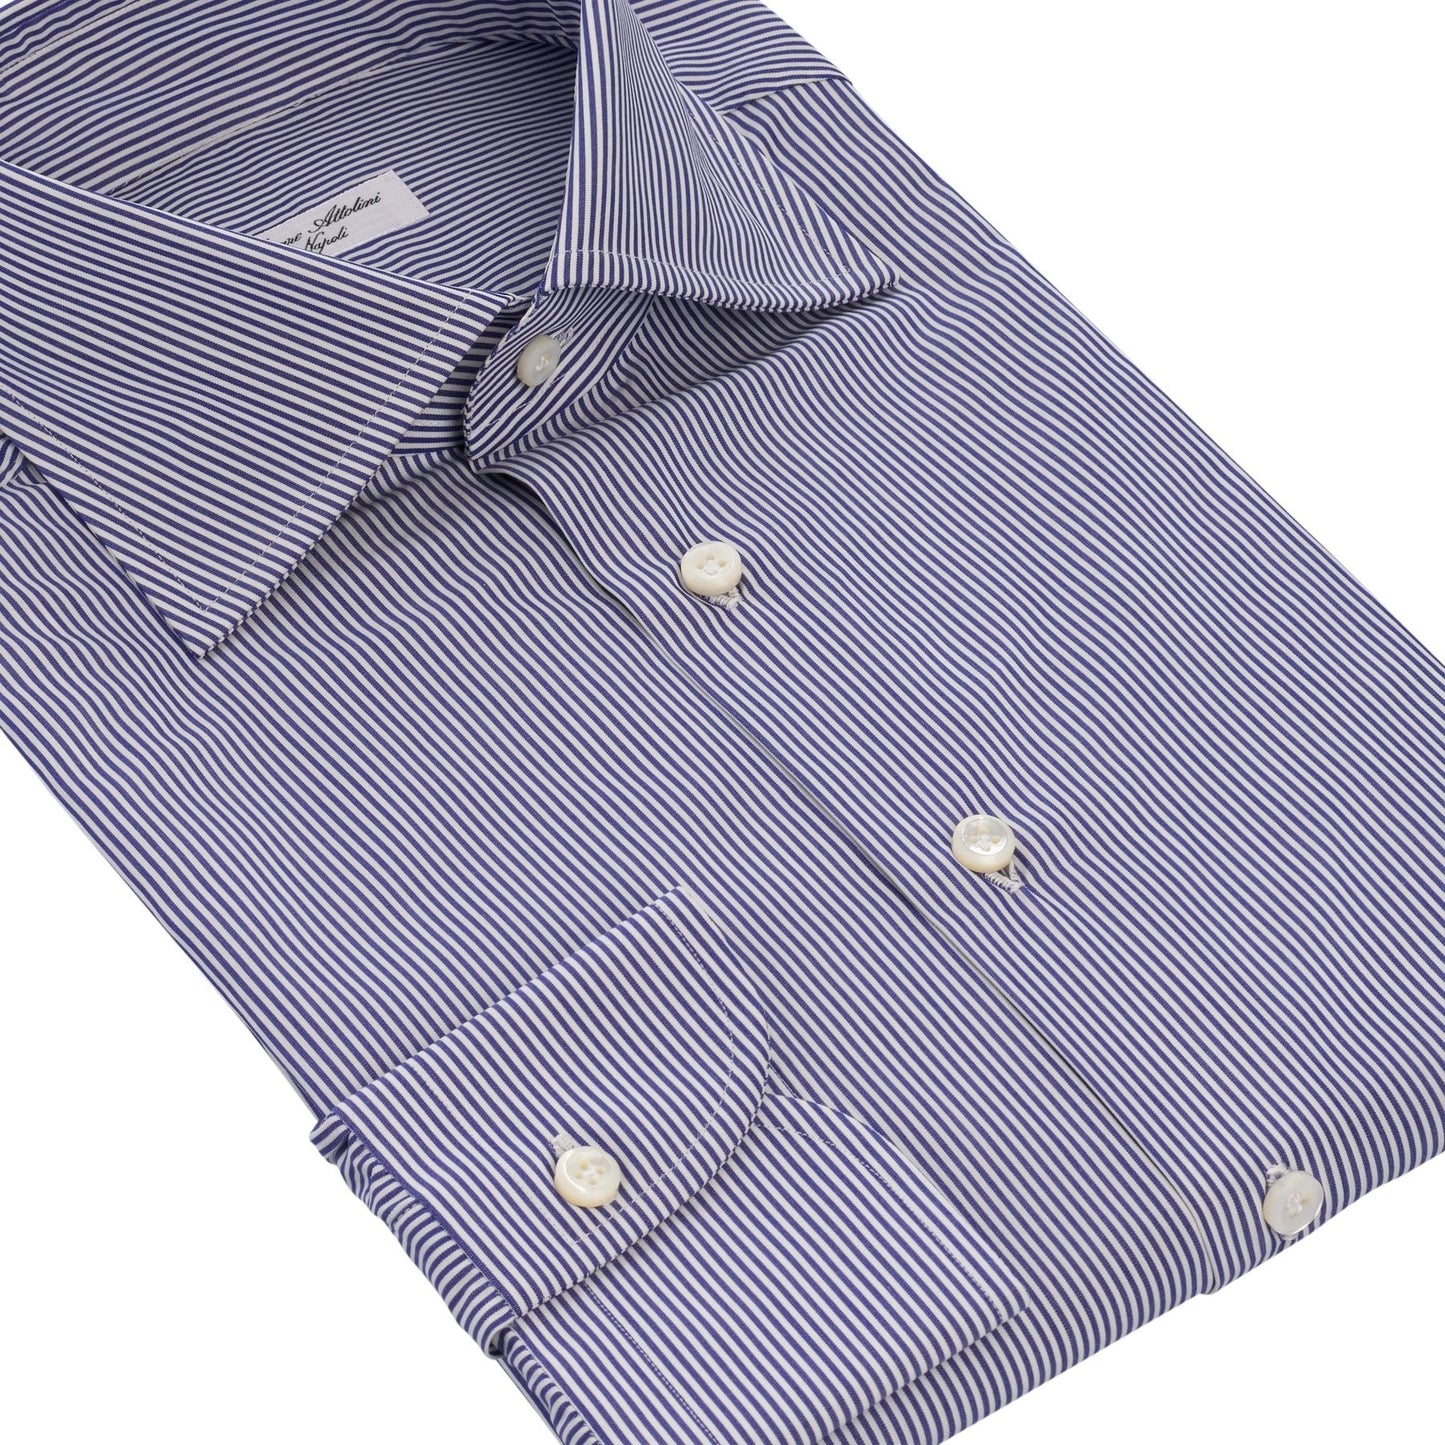 Cesare Attolini Tailored-Fit Fine Striped Cotton Shirt in Blue - SARTALE